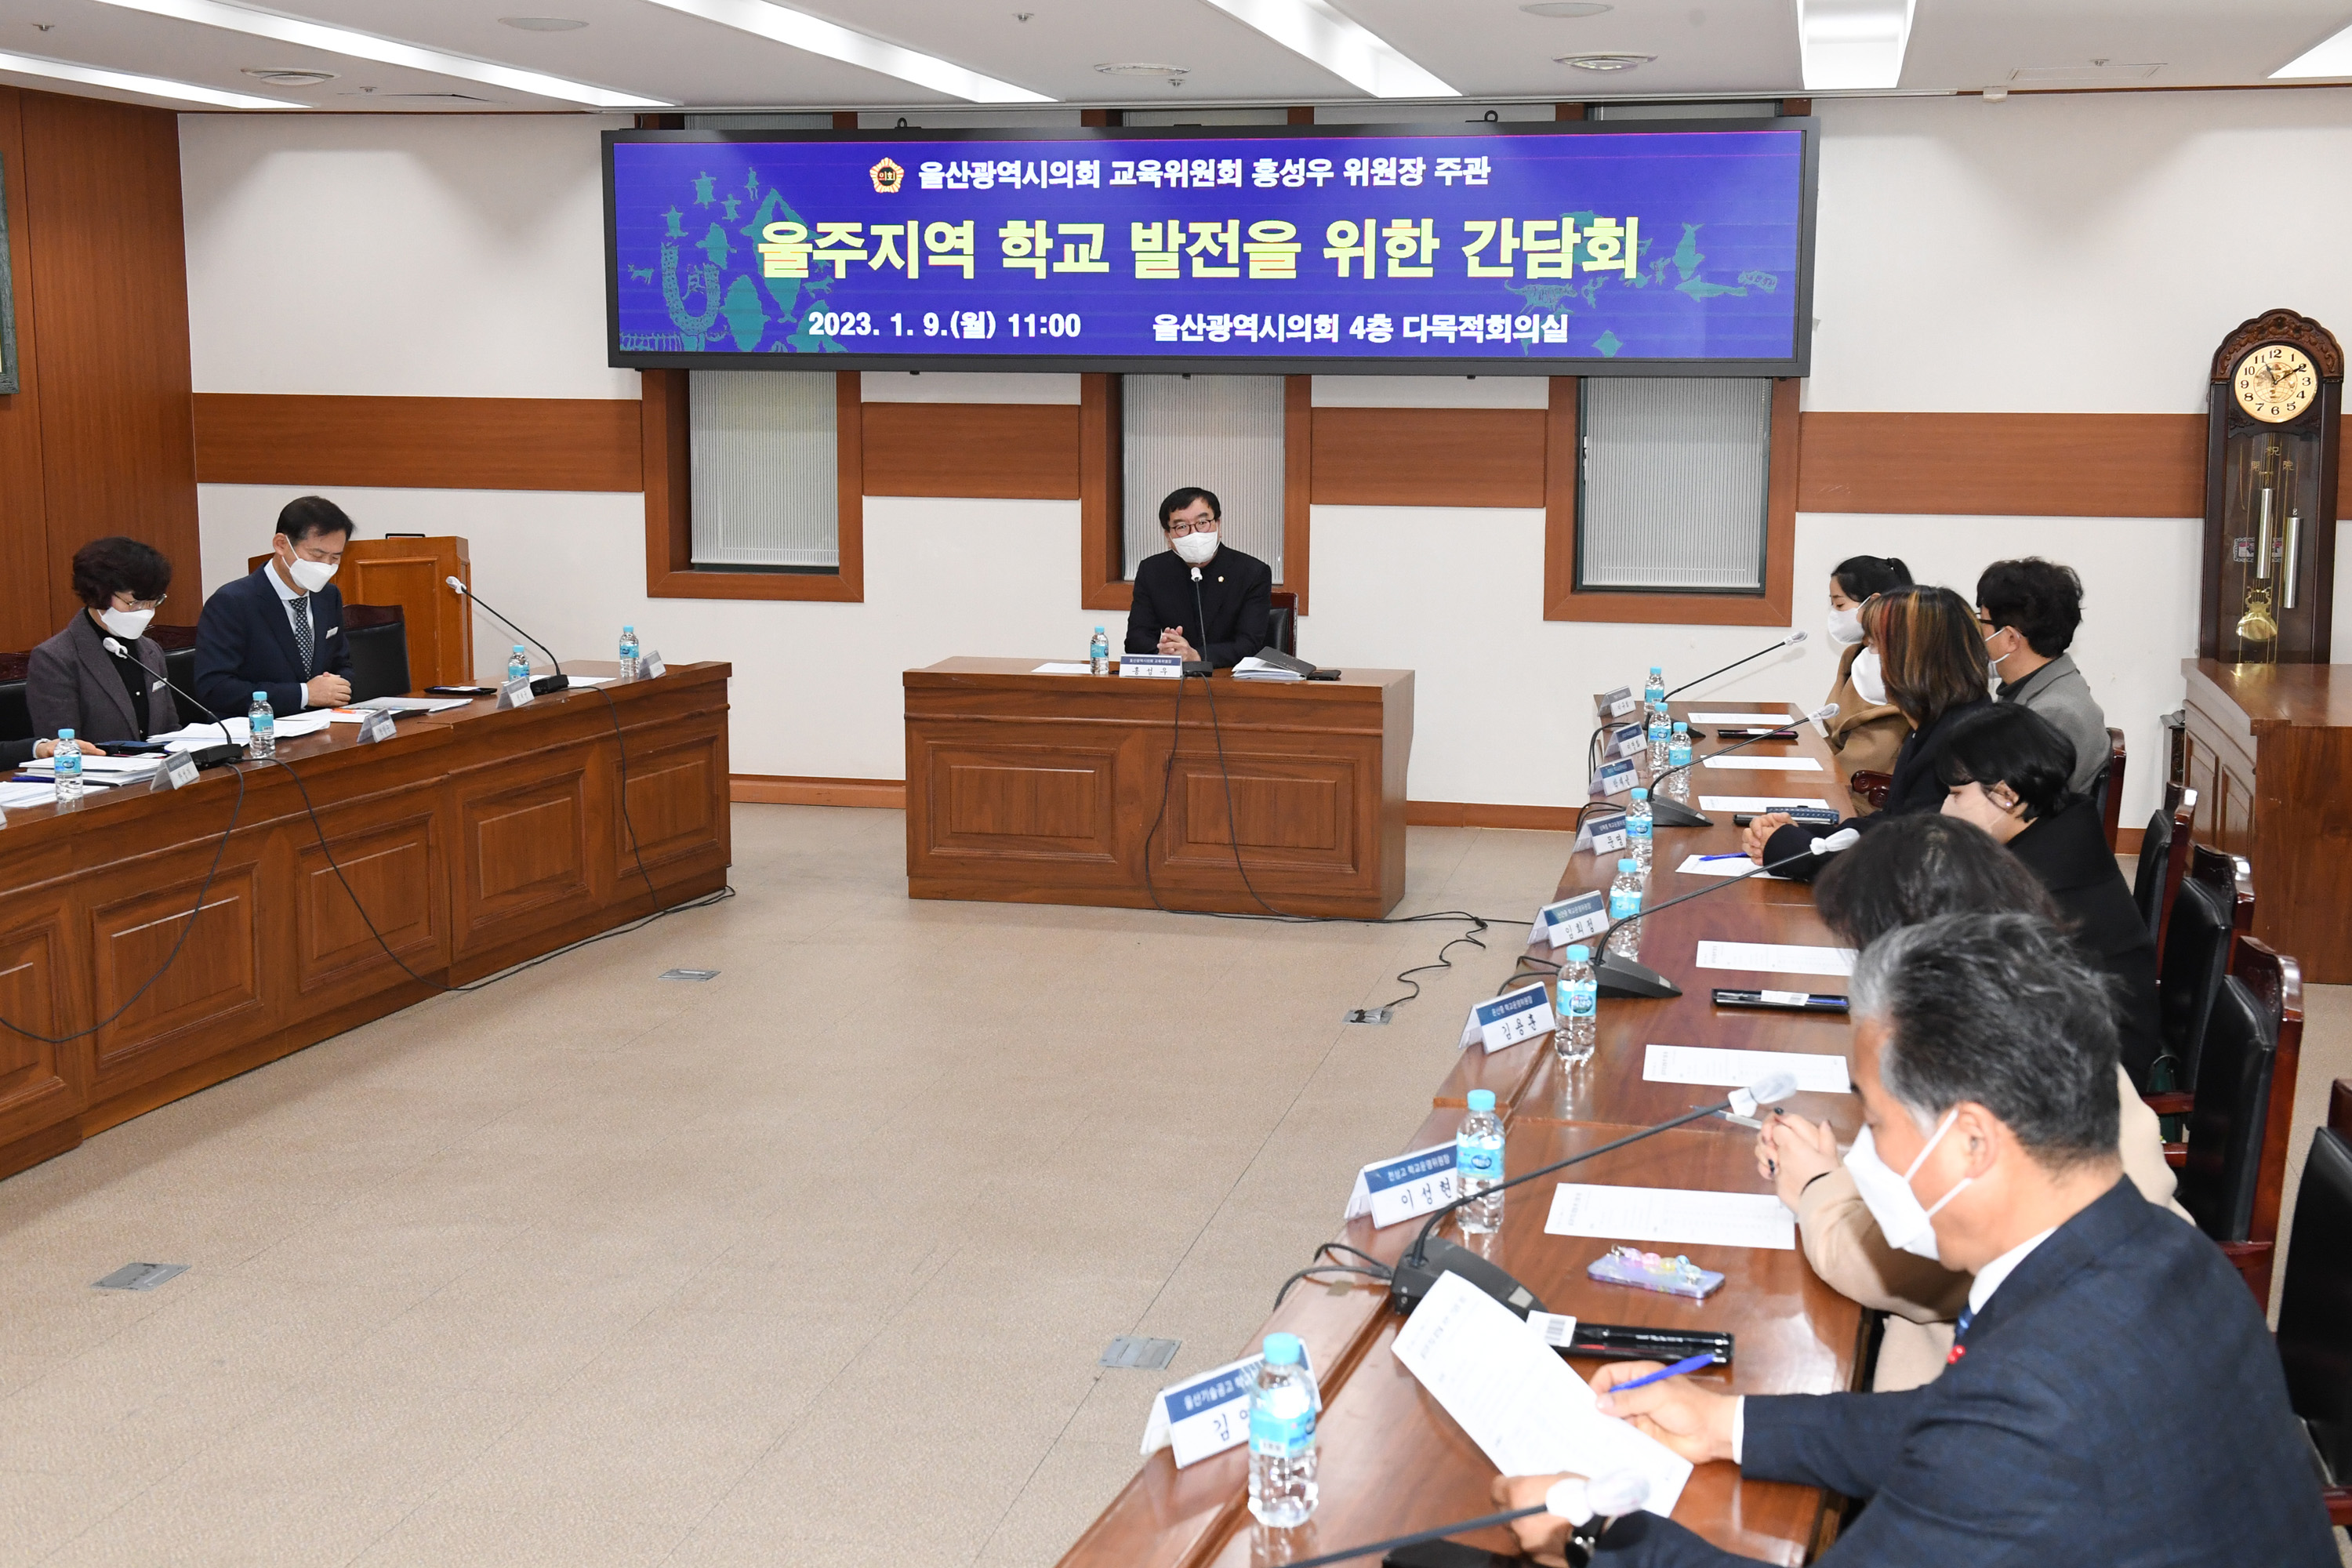 홍성우 교육위원장, 울주지역 학교 발전을 위한 간담회2